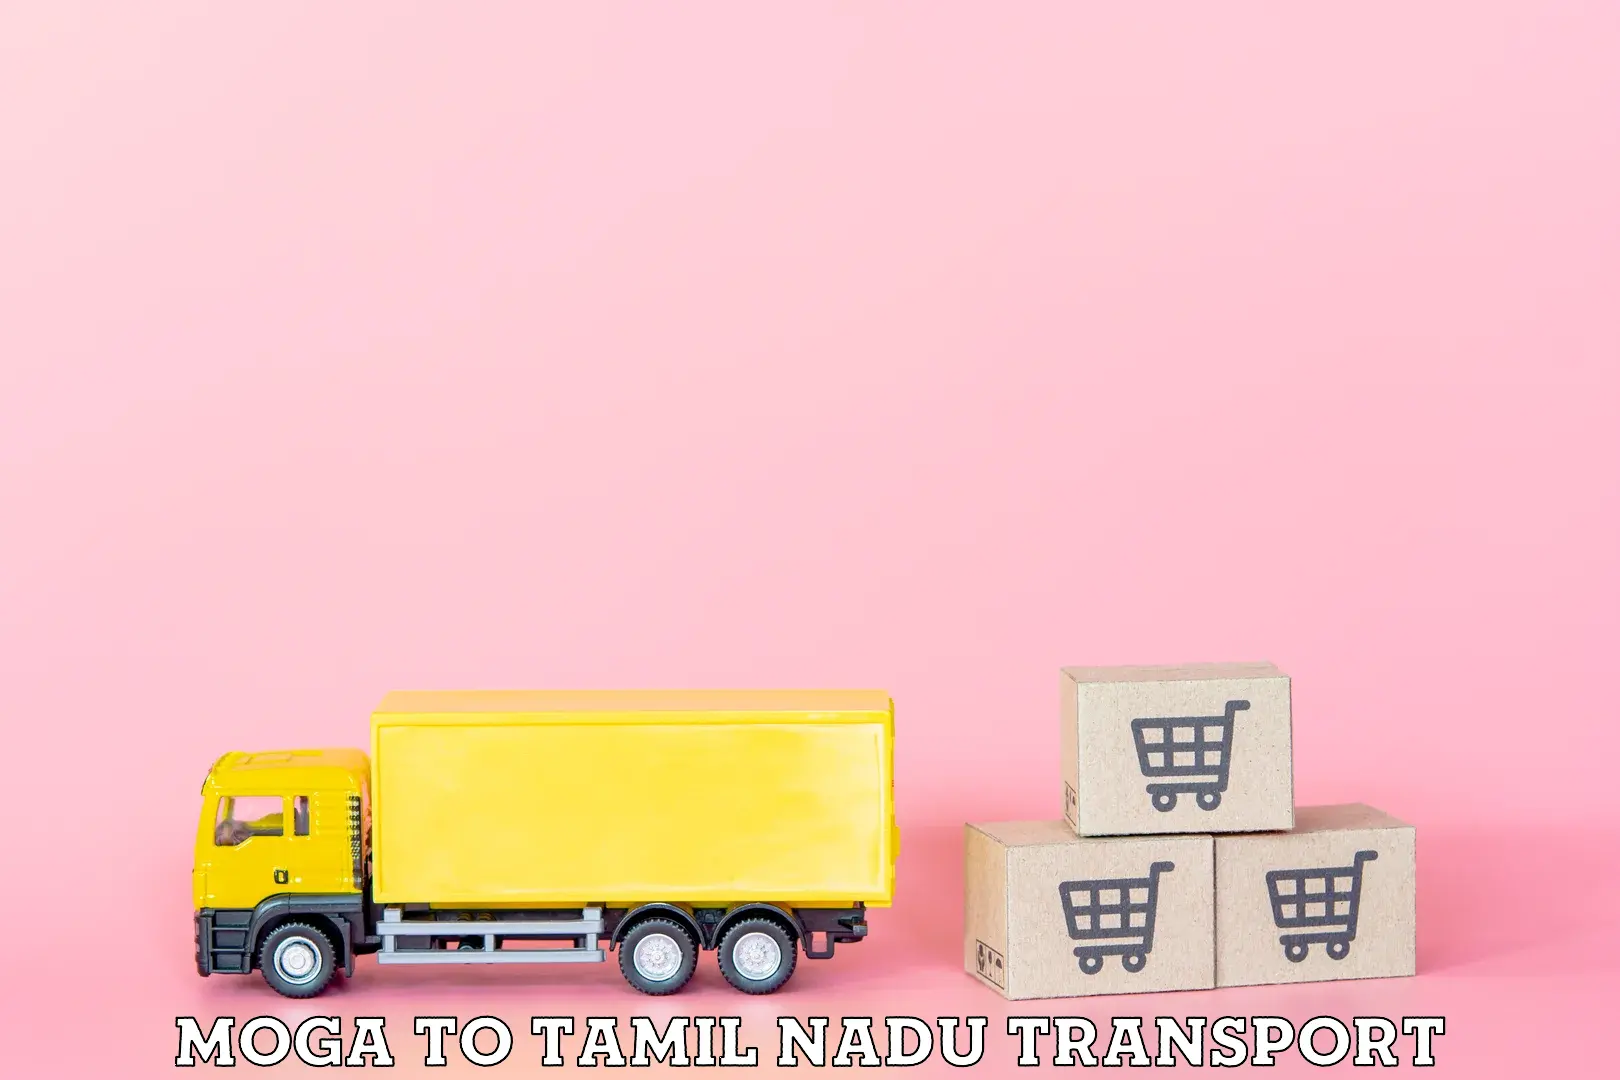 Daily parcel service transport Moga to Tiruchengodu